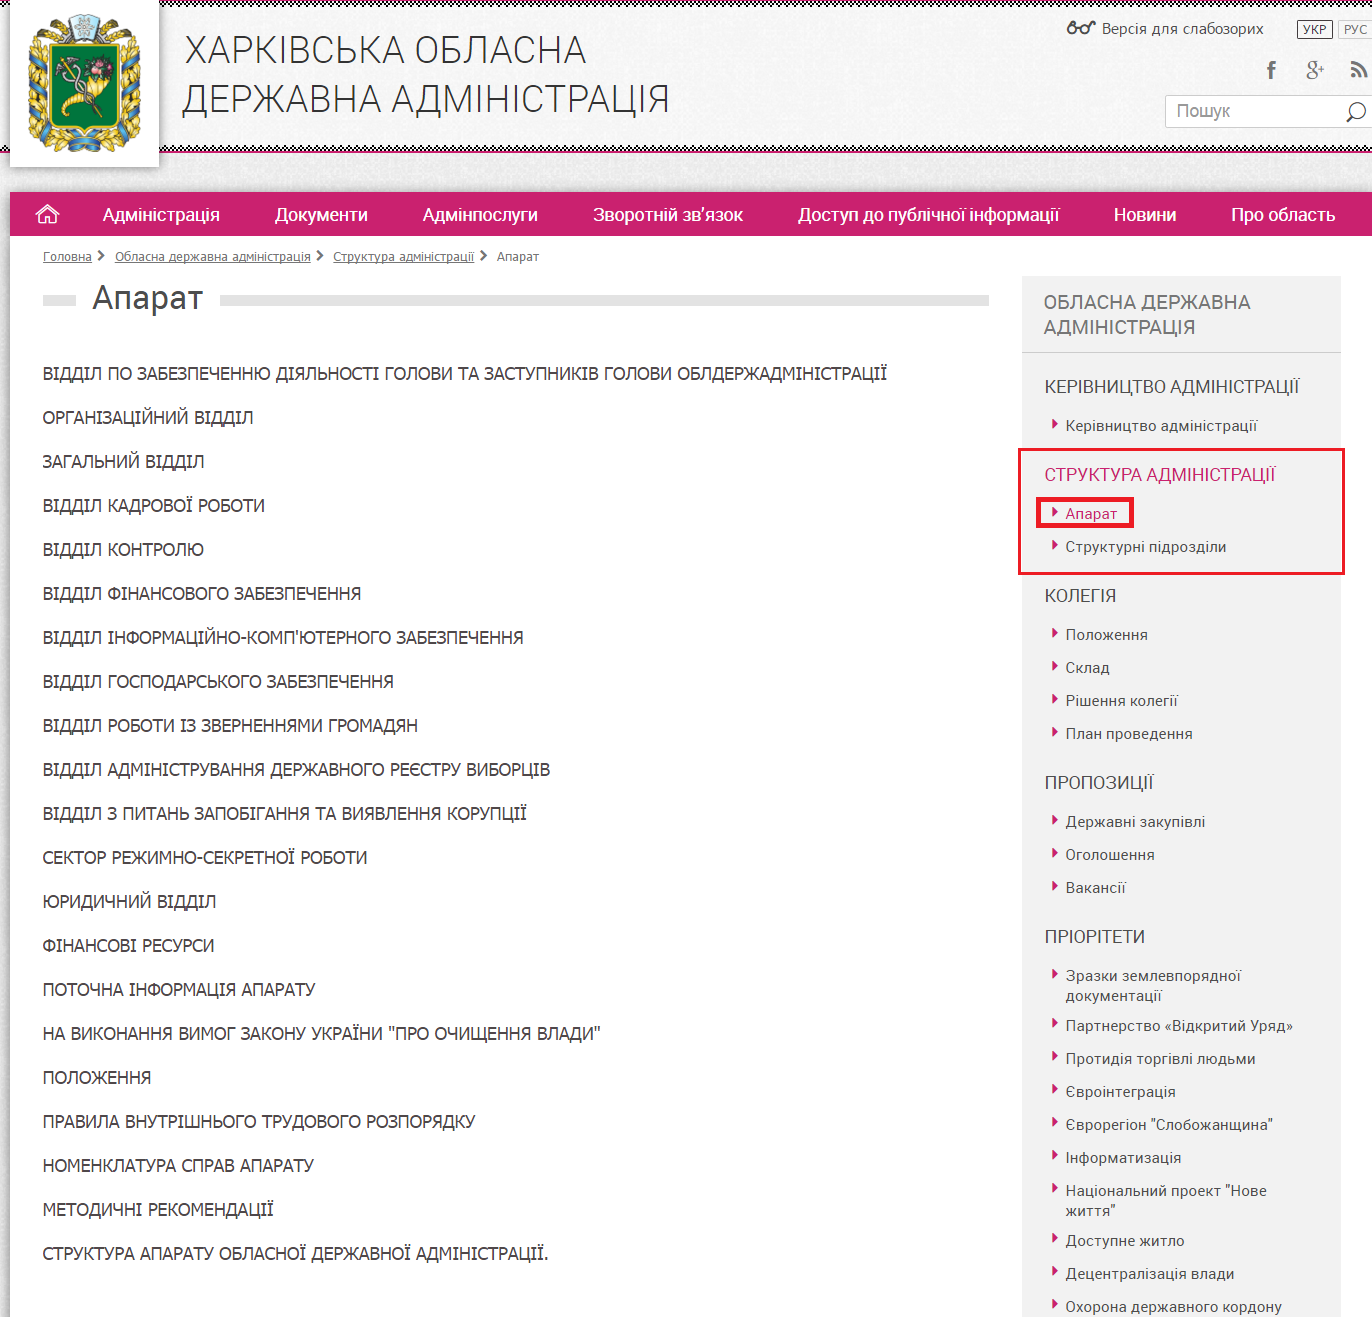 http://kharkivoda.gov.ua/oblasna-derzhavna-administratsiya/struktura-administratsiyi/aparat